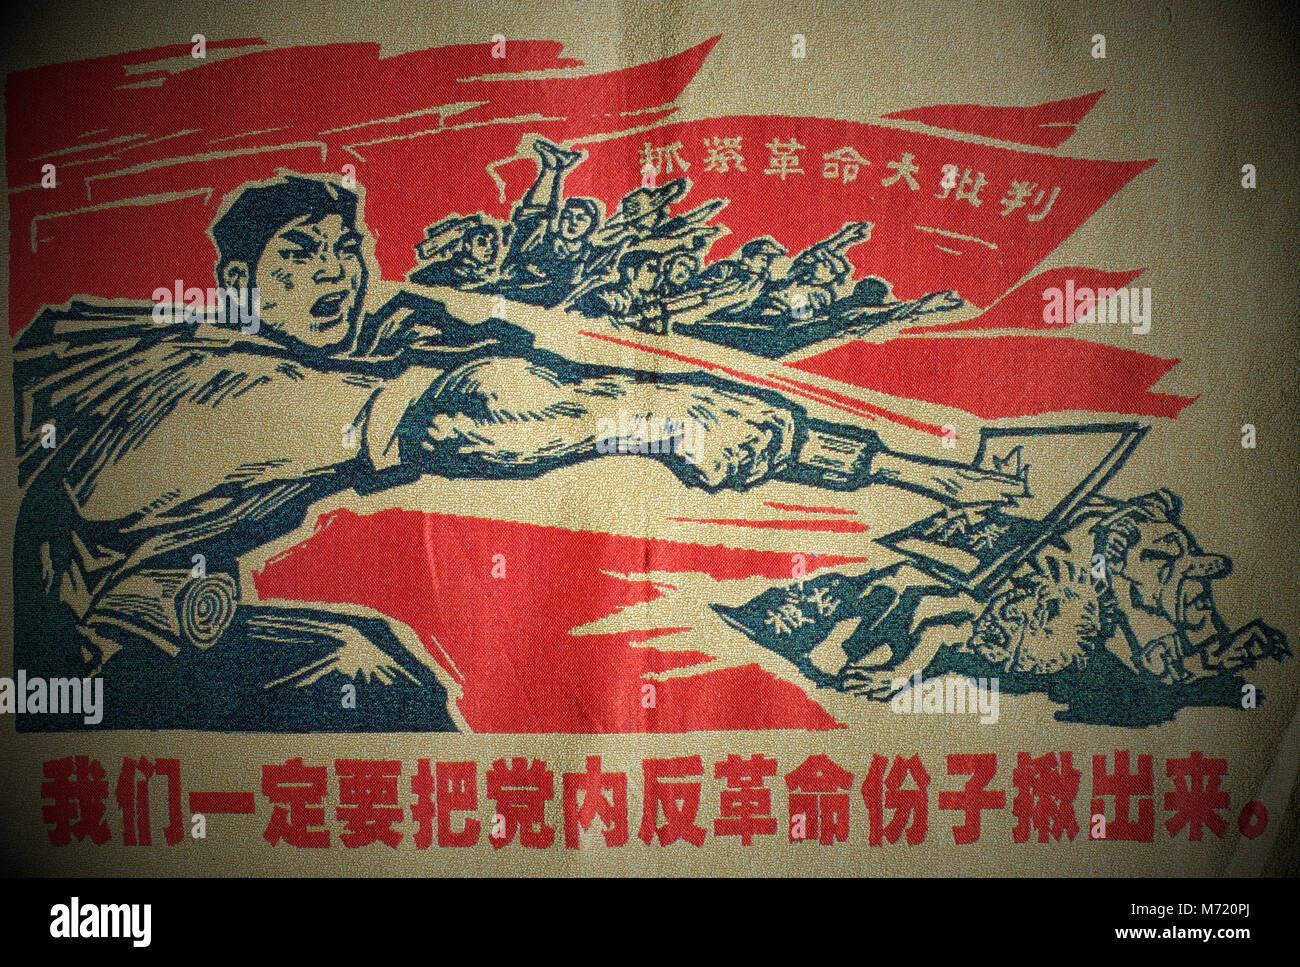 Ein Stoffplakat während der chinesischen Kulturrevolution. Die chinesischen Schriftzeichen unten lesen, Wir müssen die Konterrevolutionäre in der Partei herausziehen, und innere Zeichen lesen, erfassen Revolution und Förderung der Produktion. Stockfoto